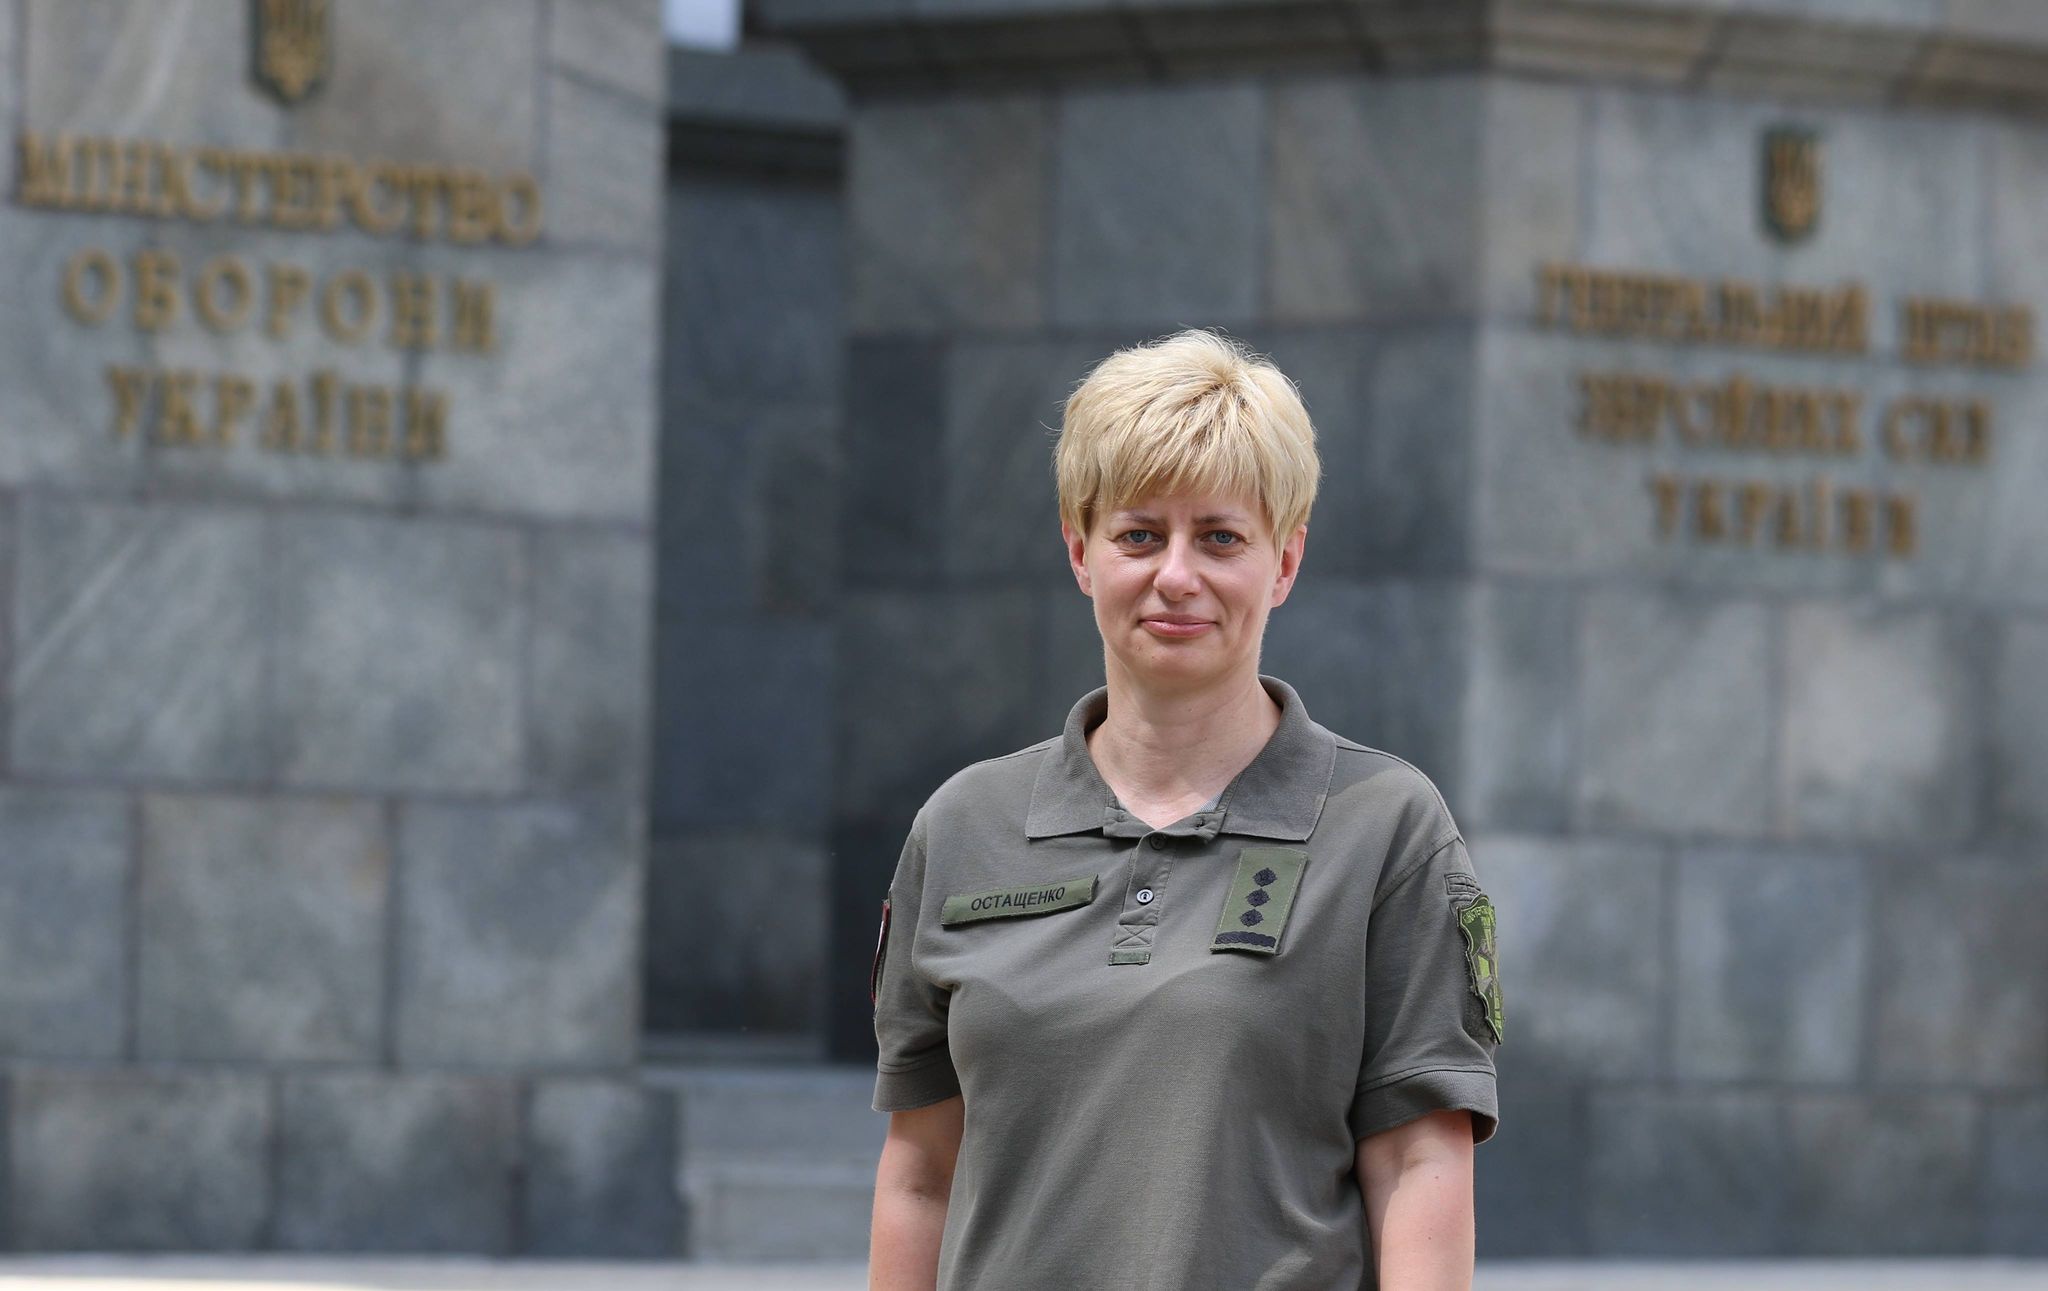 Жінку вперше призначили на генеральську посаду в ЗСУ